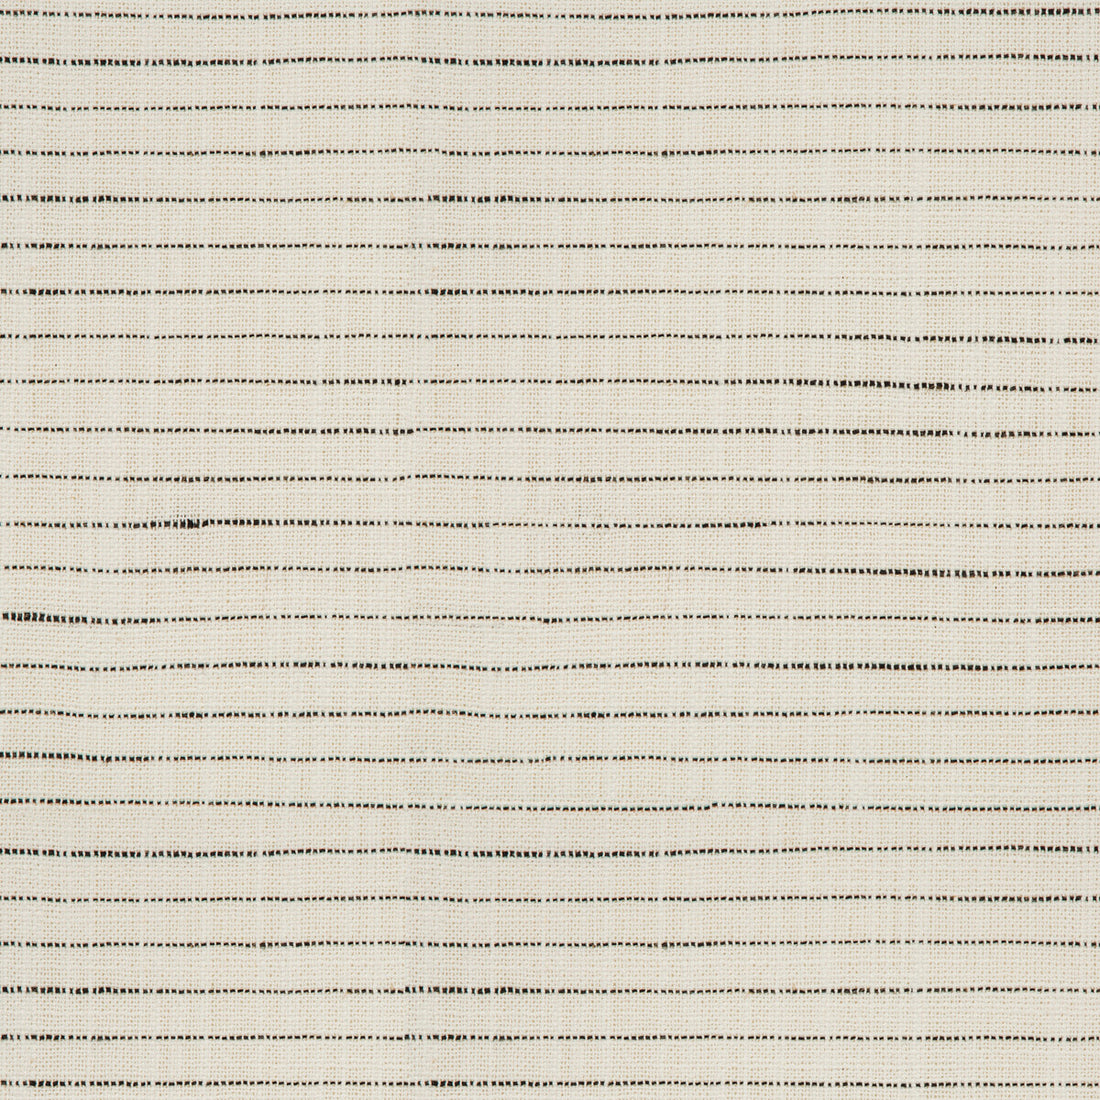 Kravet Basic fabric in 35931-18 color - pattern 35931.18.0 - by Kravet Basics in the Performance Kravetarmor collection